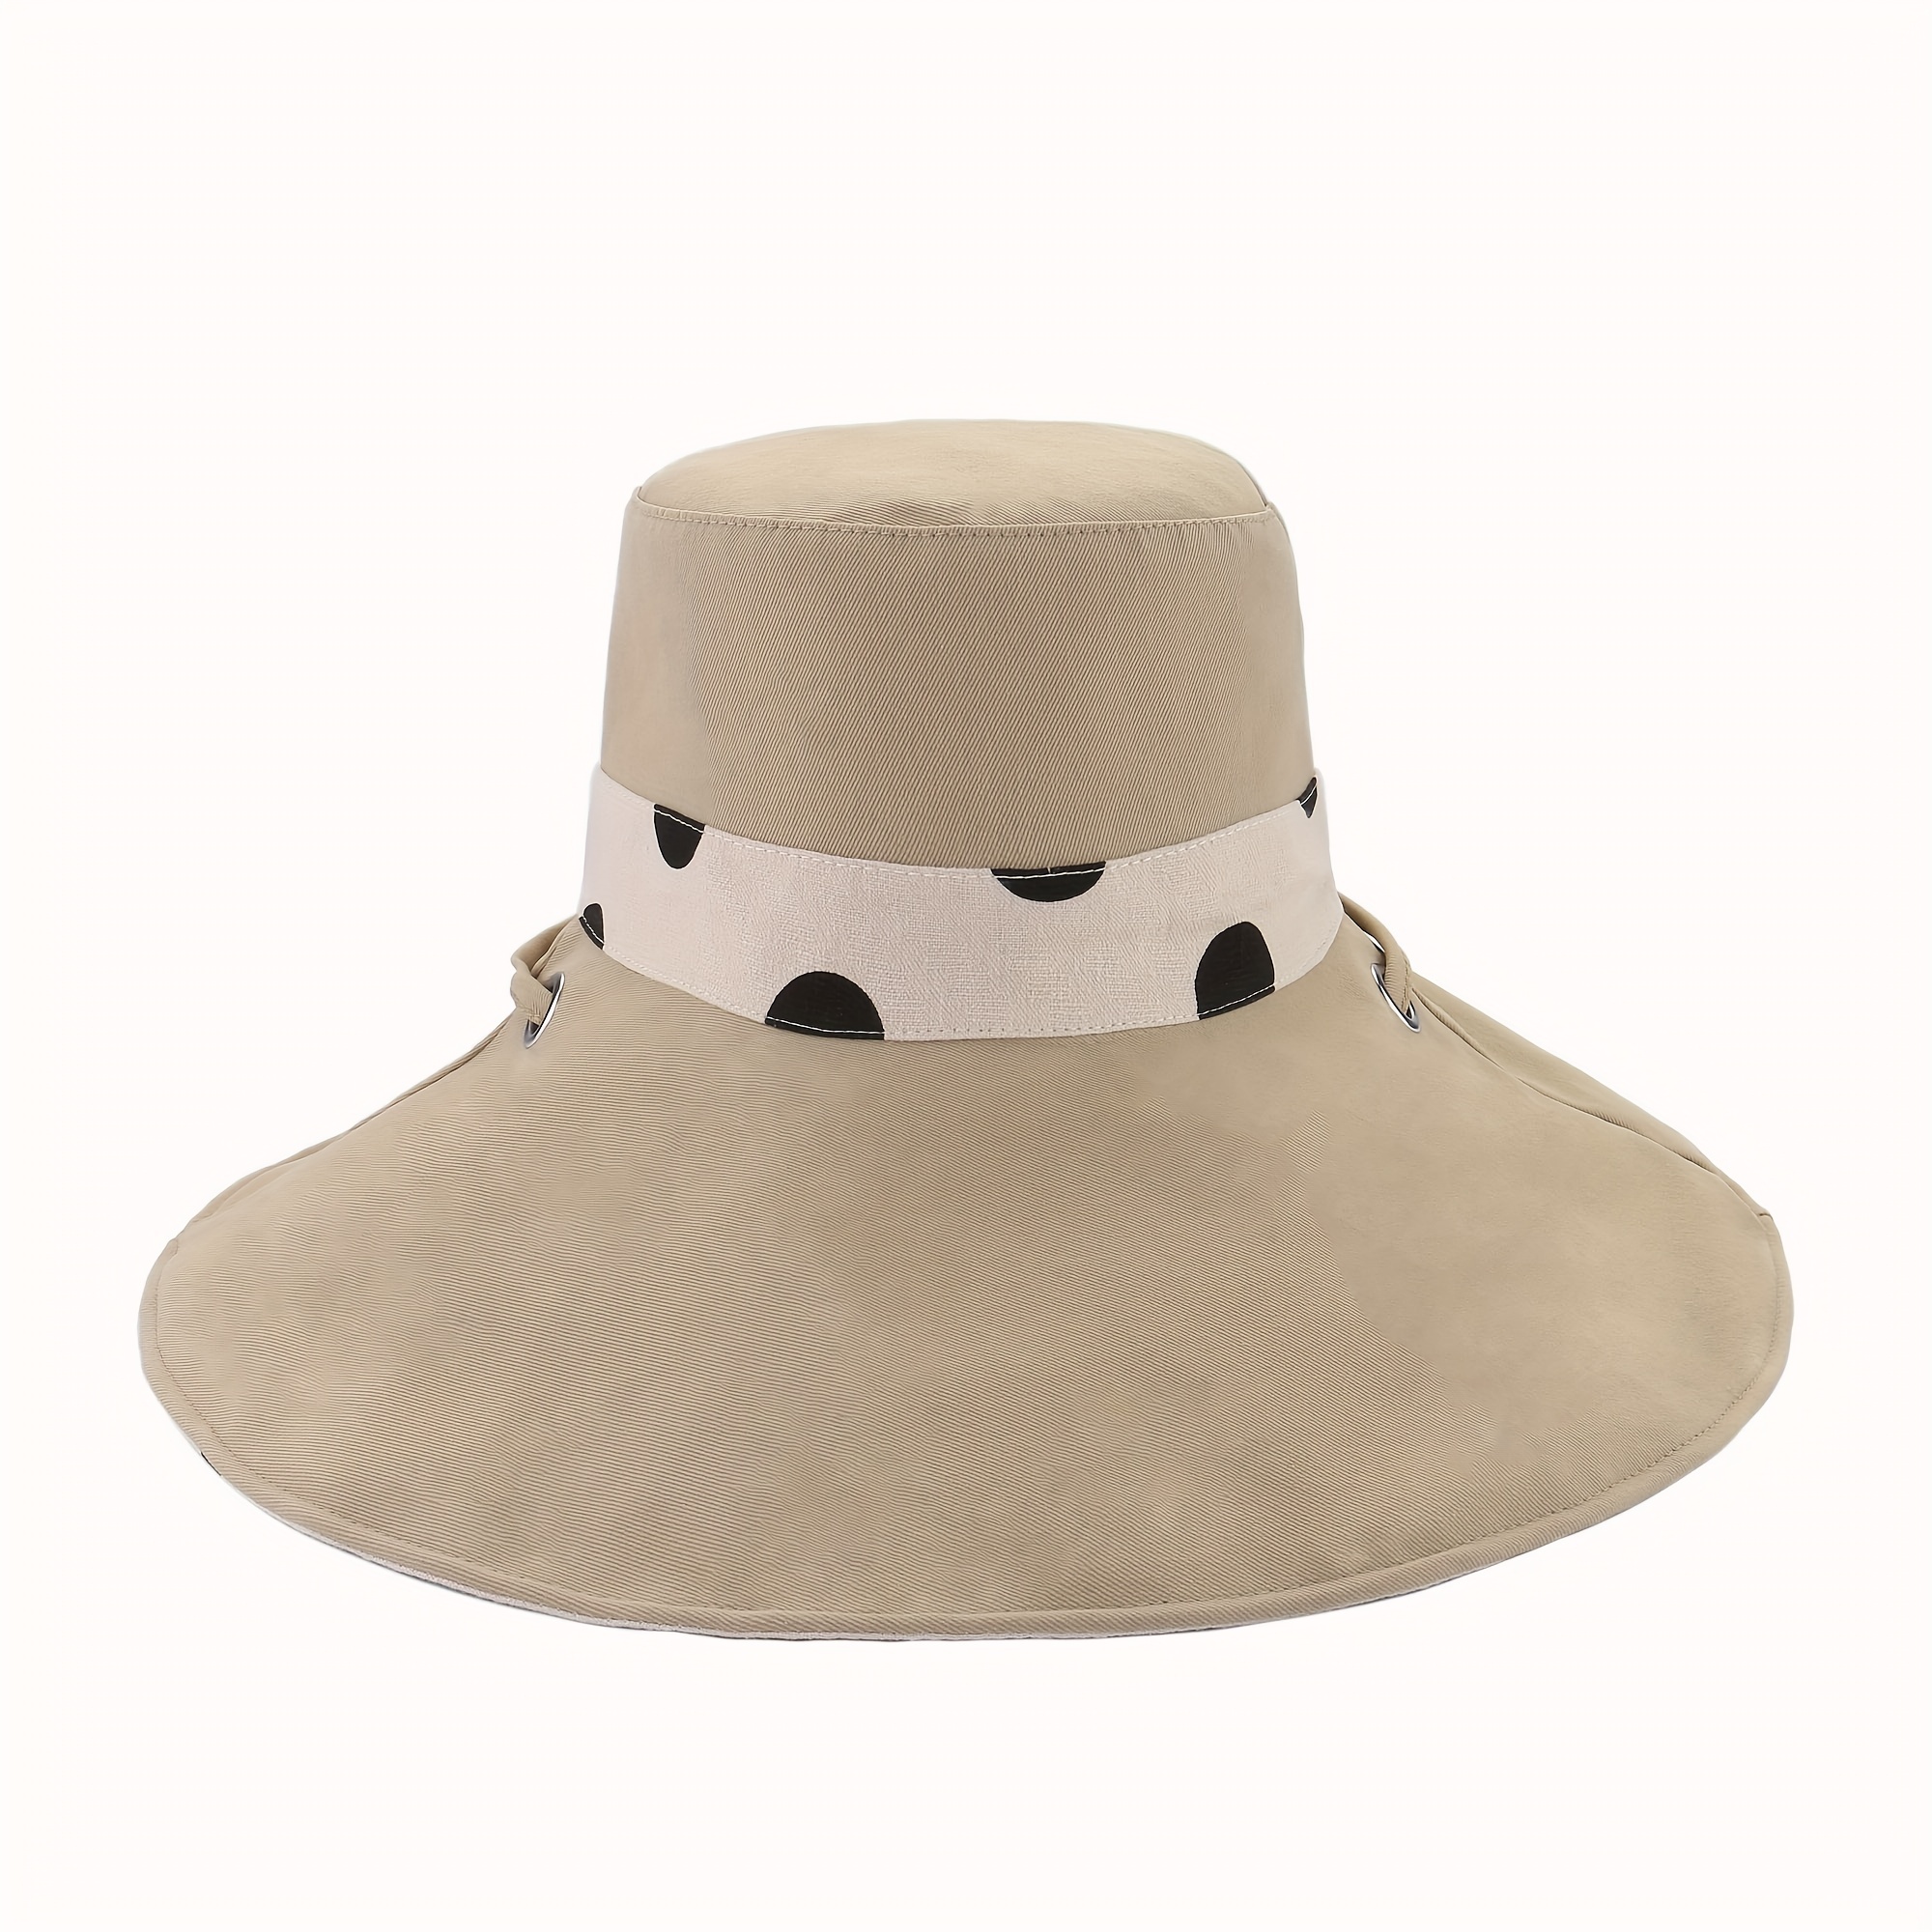 Stradivarius bucket hat in polka dot